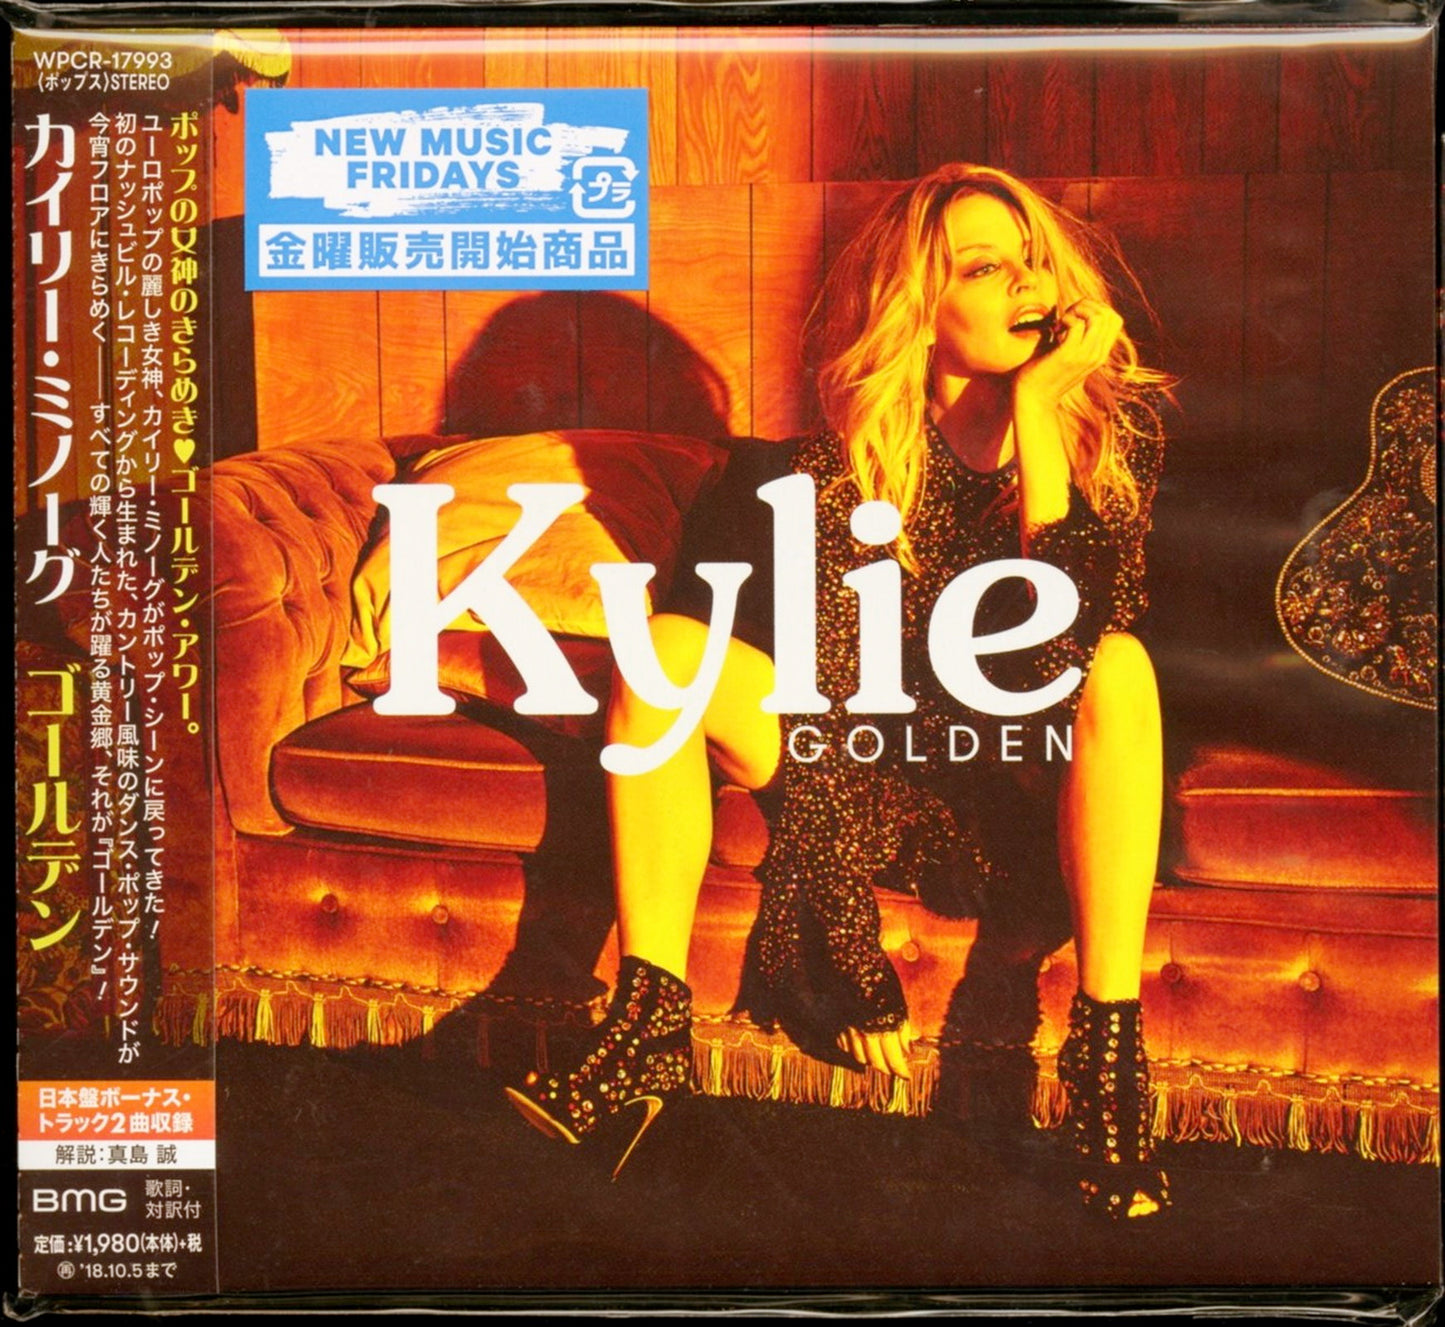 Kylie Minogue - Golden - Japan CD